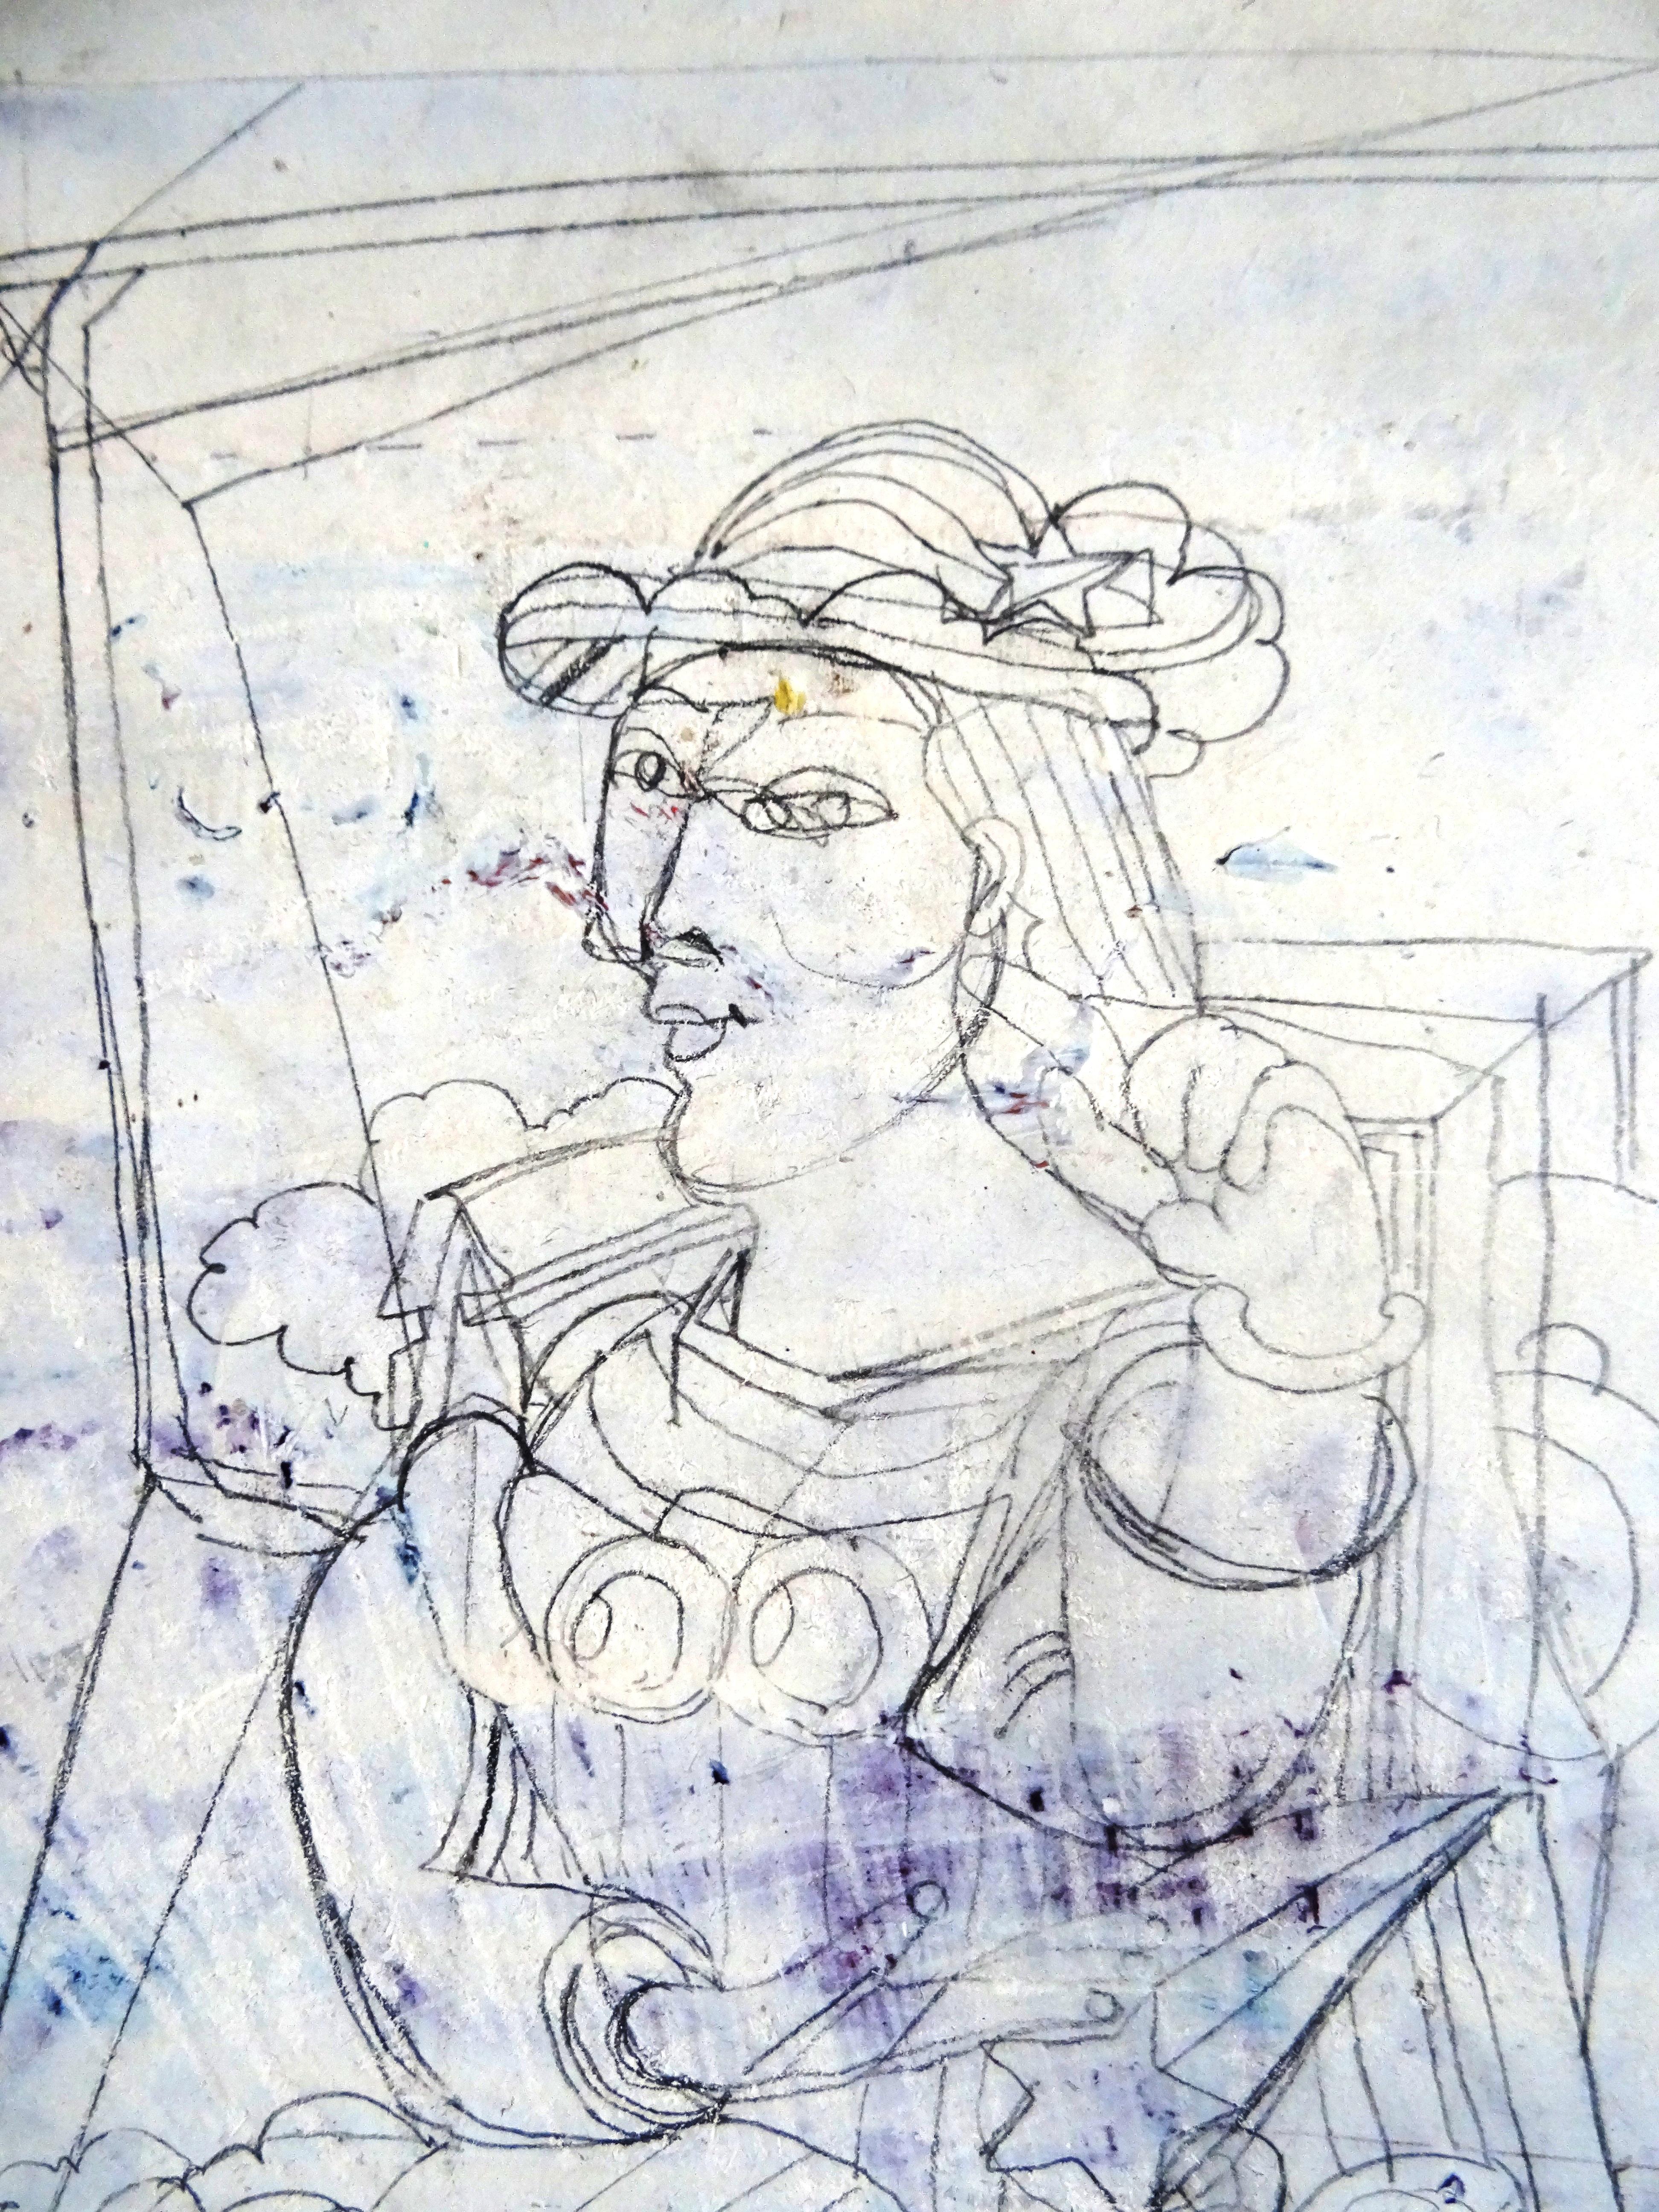 Auf Wiedersehen Picasso. Kartenkarton, Bleistift, 31x20 cm (Impressionismus), Art, von Vladimir Glushenkov 